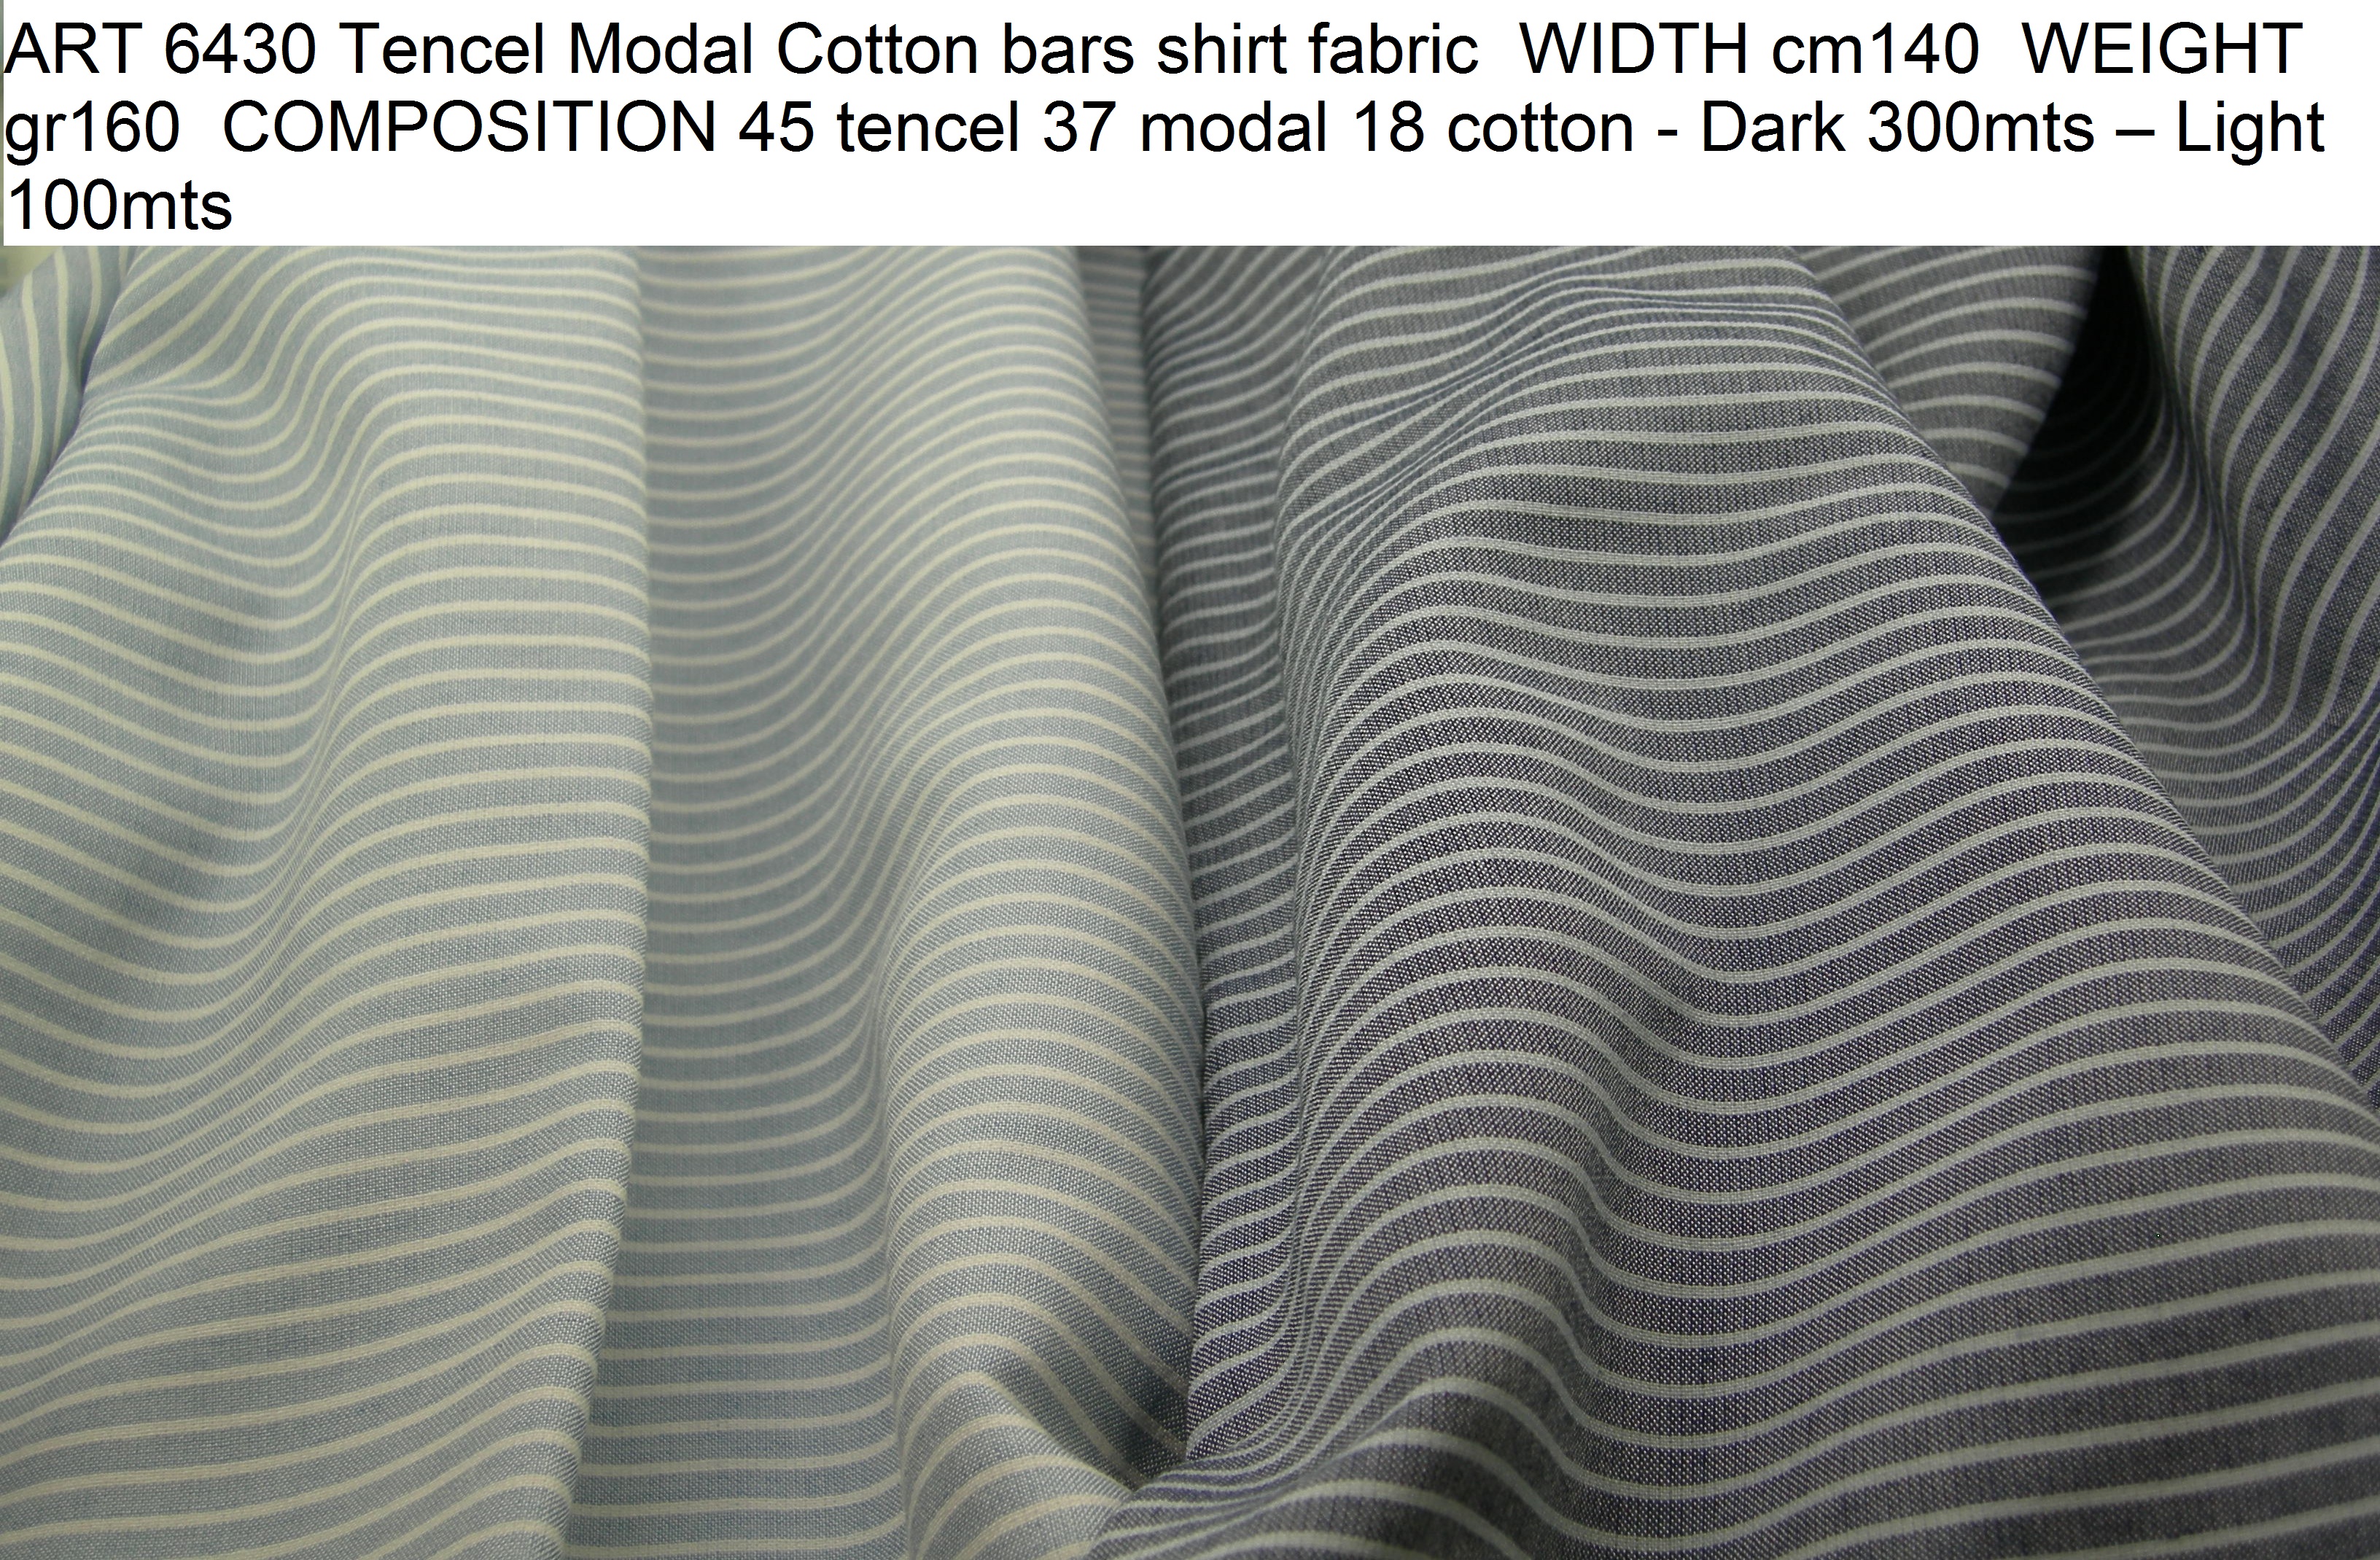 ART 6430 Tencel Modal Cotton bars shirt fabric WIDTH cm140 WEIGHT gr160 COMPOSITION 45 tencel 37 modal 18 cotton - Dark 300mts – Light 100mts